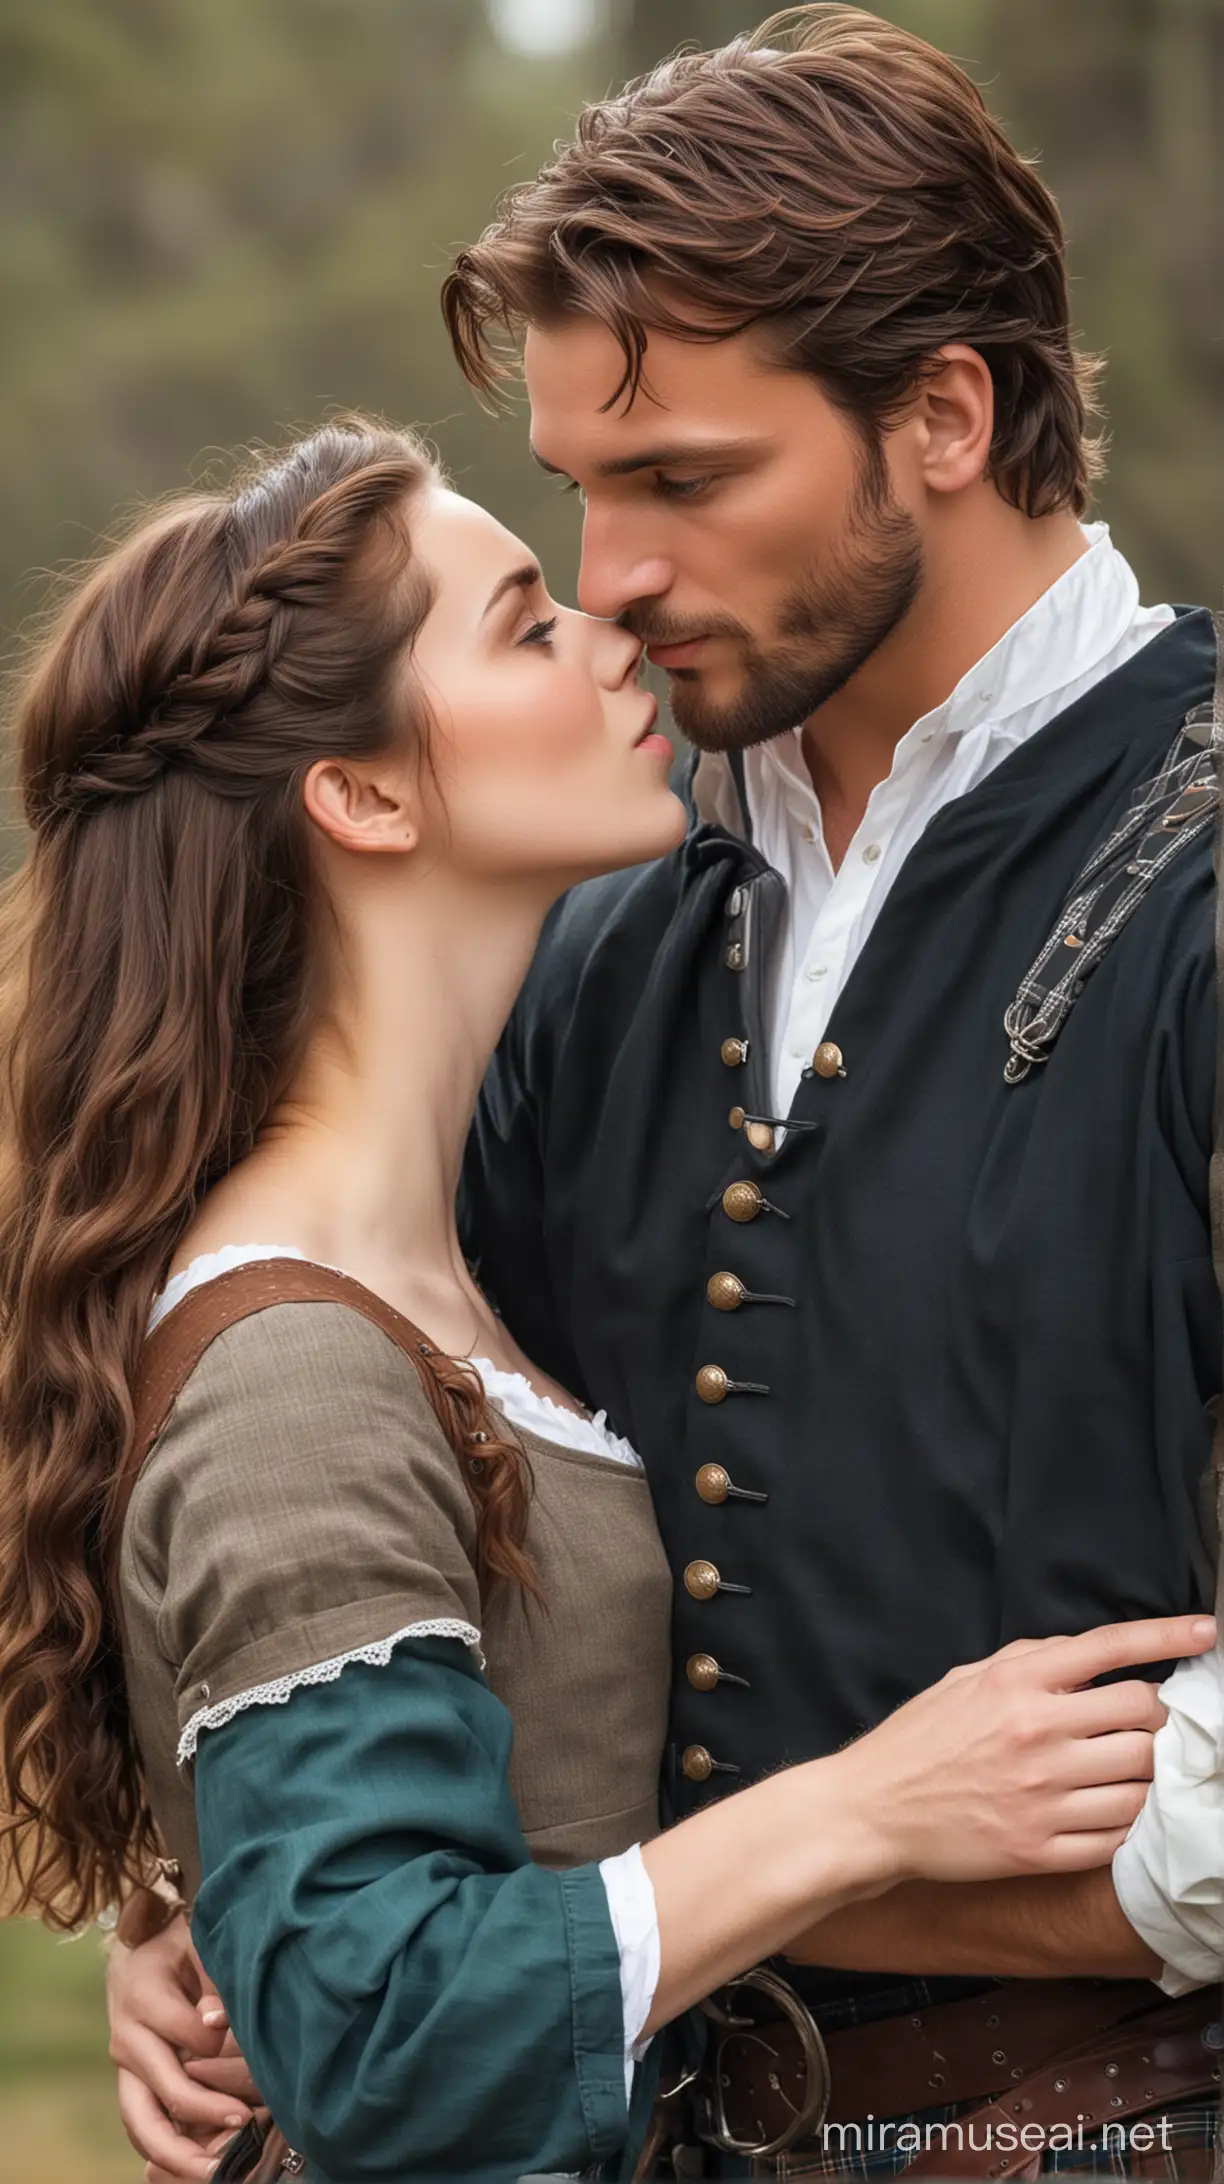 Hombre guapo pelo color castaño Escocés kilt atractivo ojos azules época medieval besando a mujer joven guapa morena